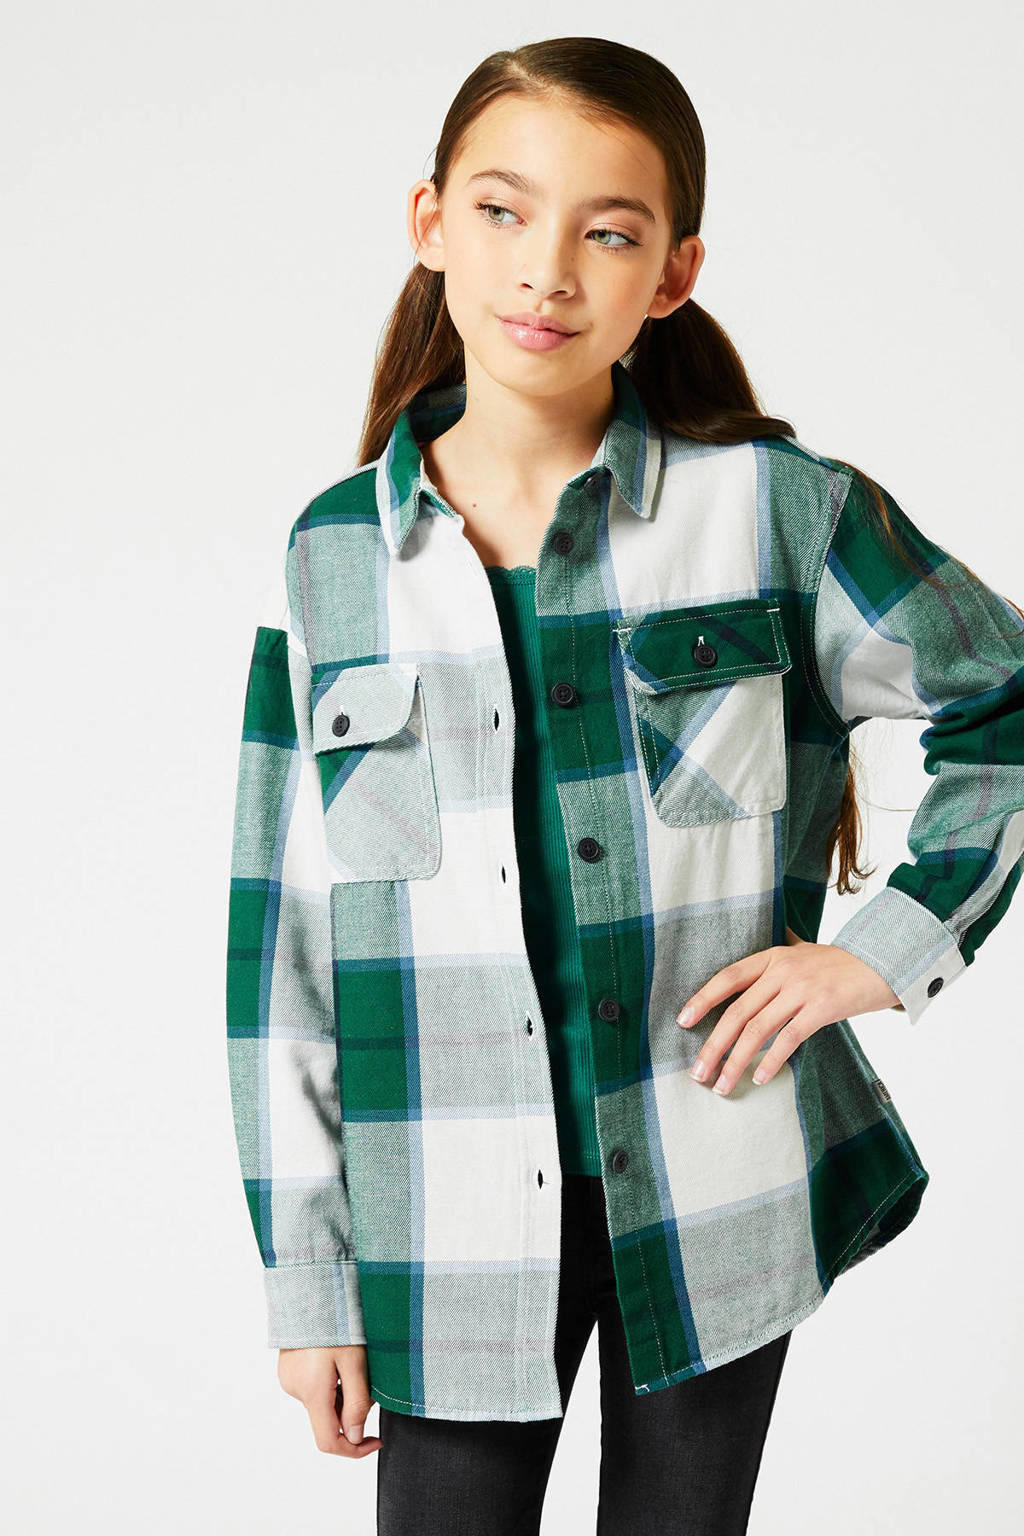 Onrustig samenvoegen Kustlijn America Today geruite blouse groen/wit | wehkamp